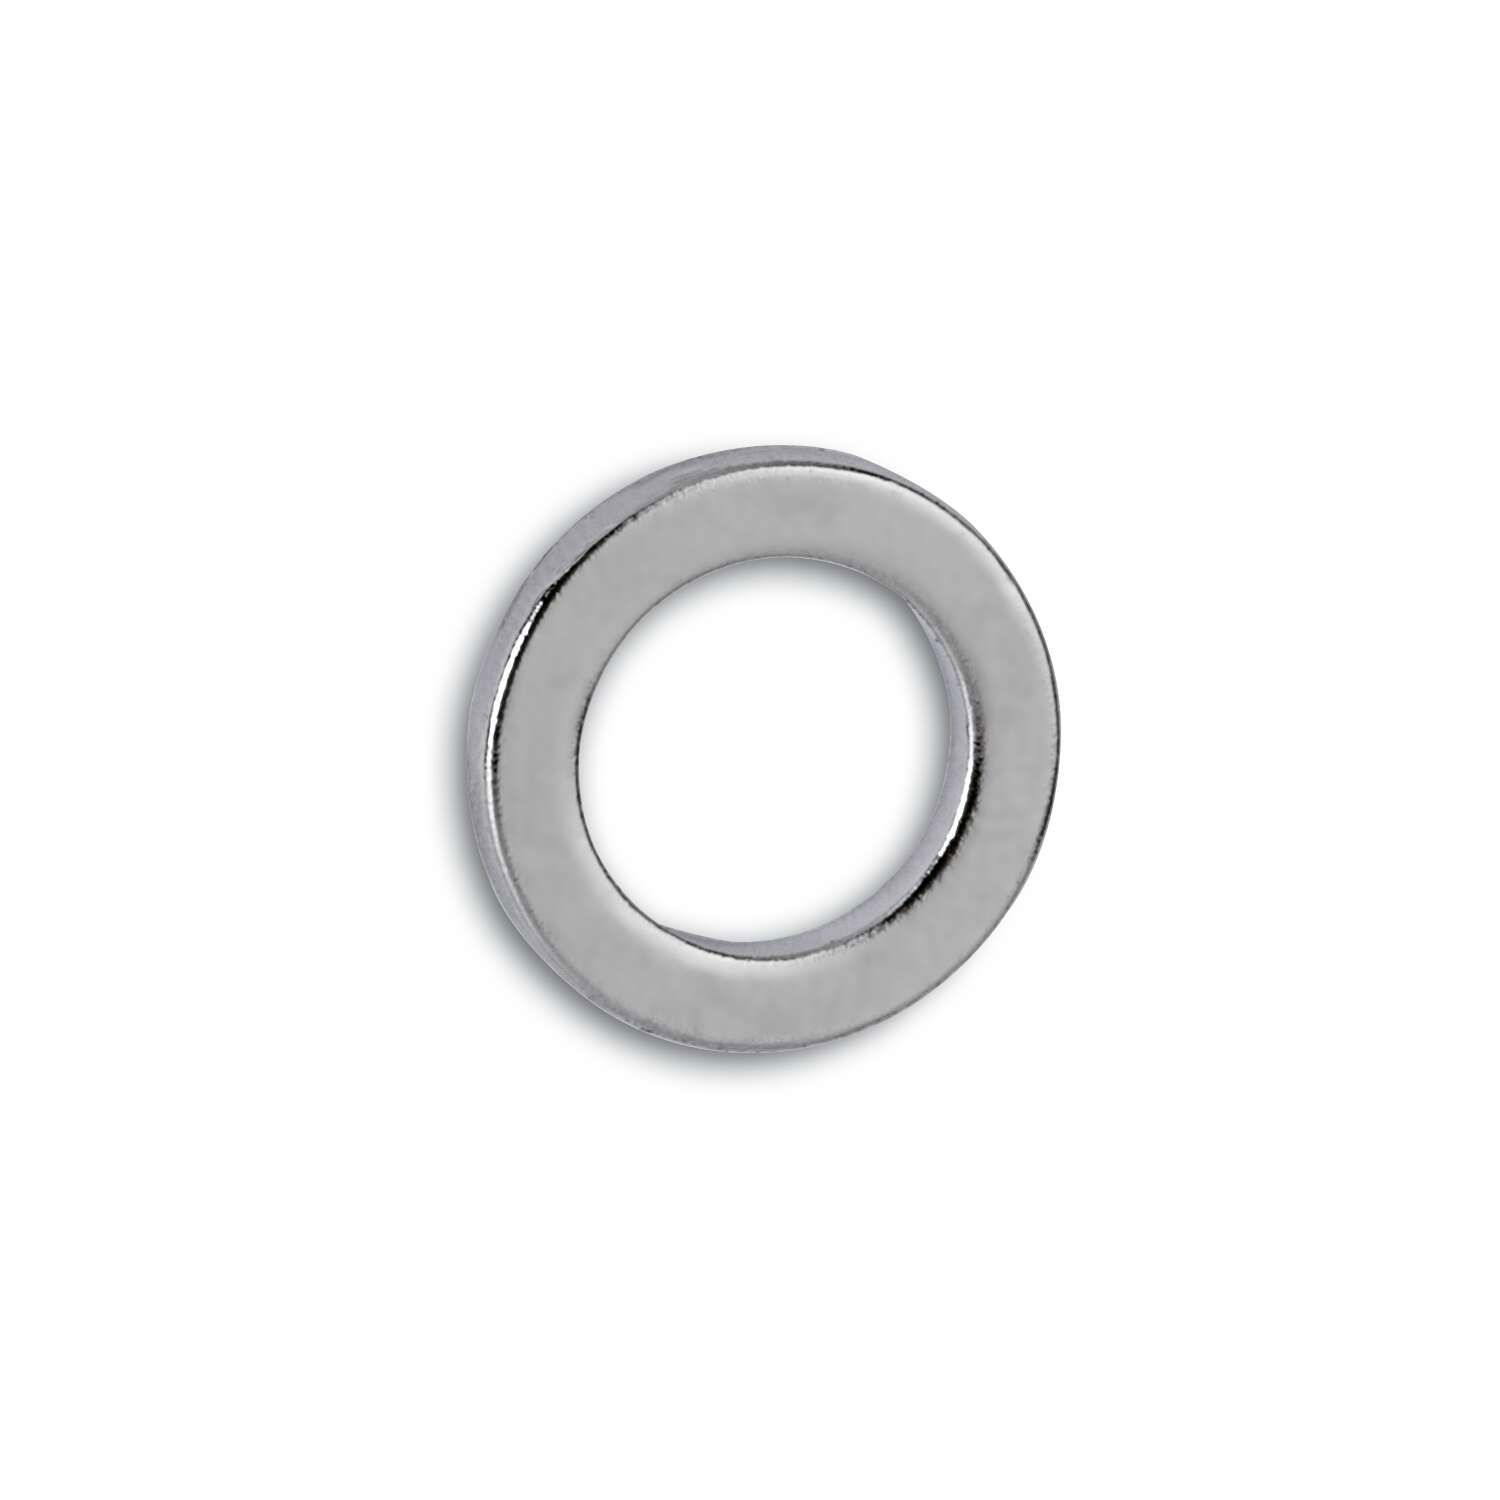 Neodym-Ringmagnet, Ø 12 mm, 0,5 kg, 10 St.